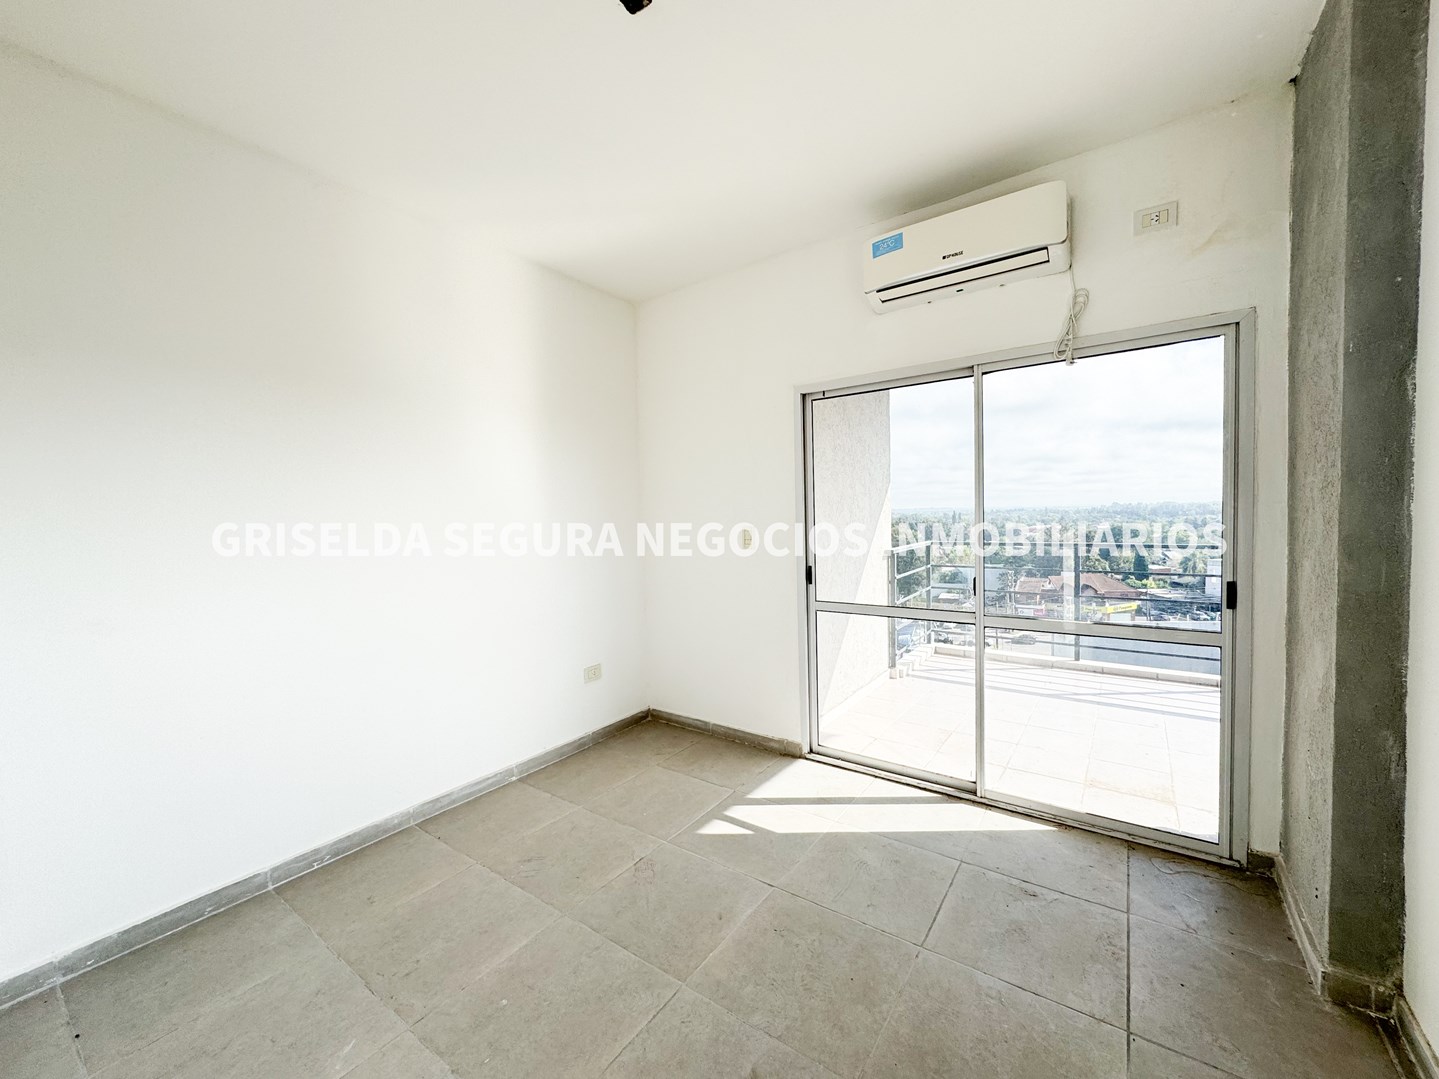 #5014144 | Rental | Apartment | Pilar (Griselda Segura Negocios Inmobiliarios)